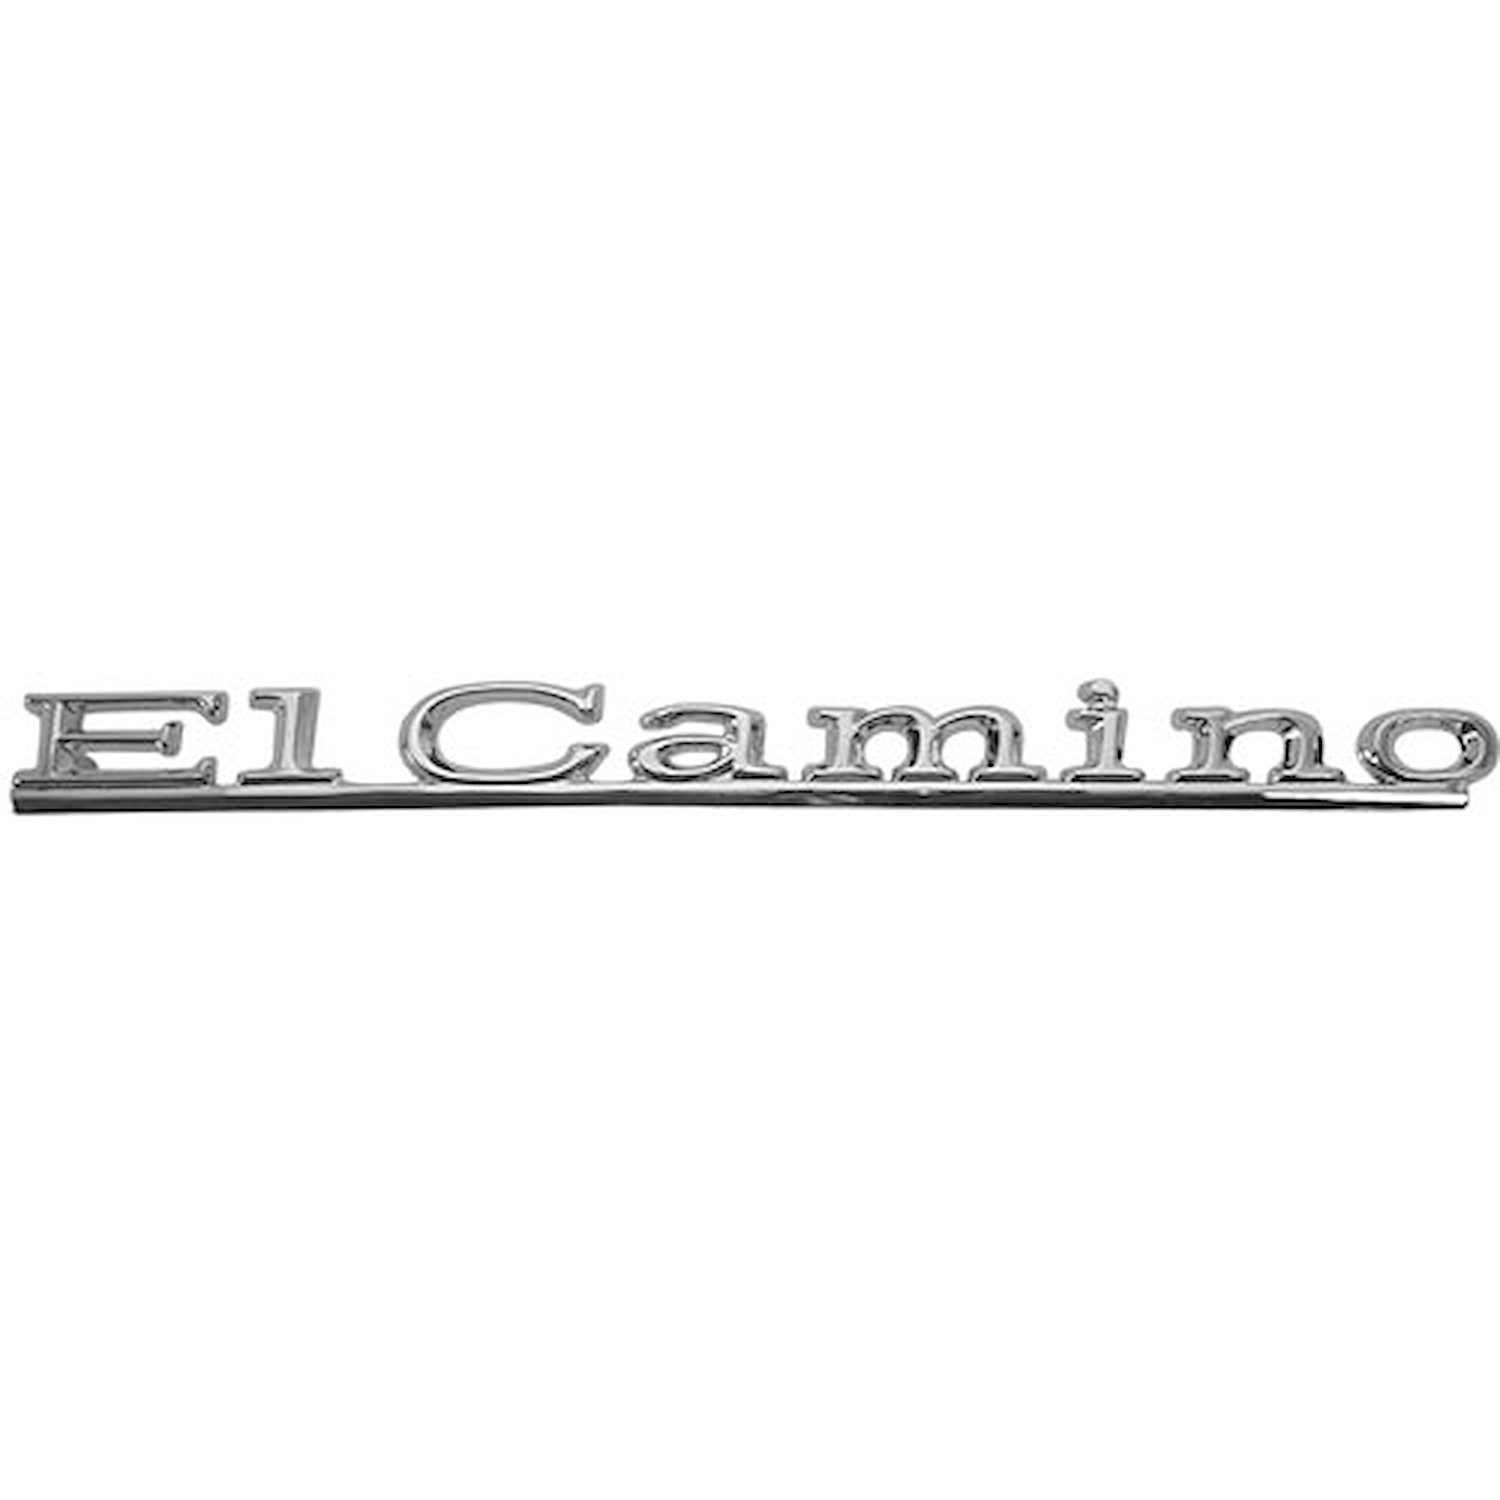 Hood Emblem 1967 Chevy El Camino